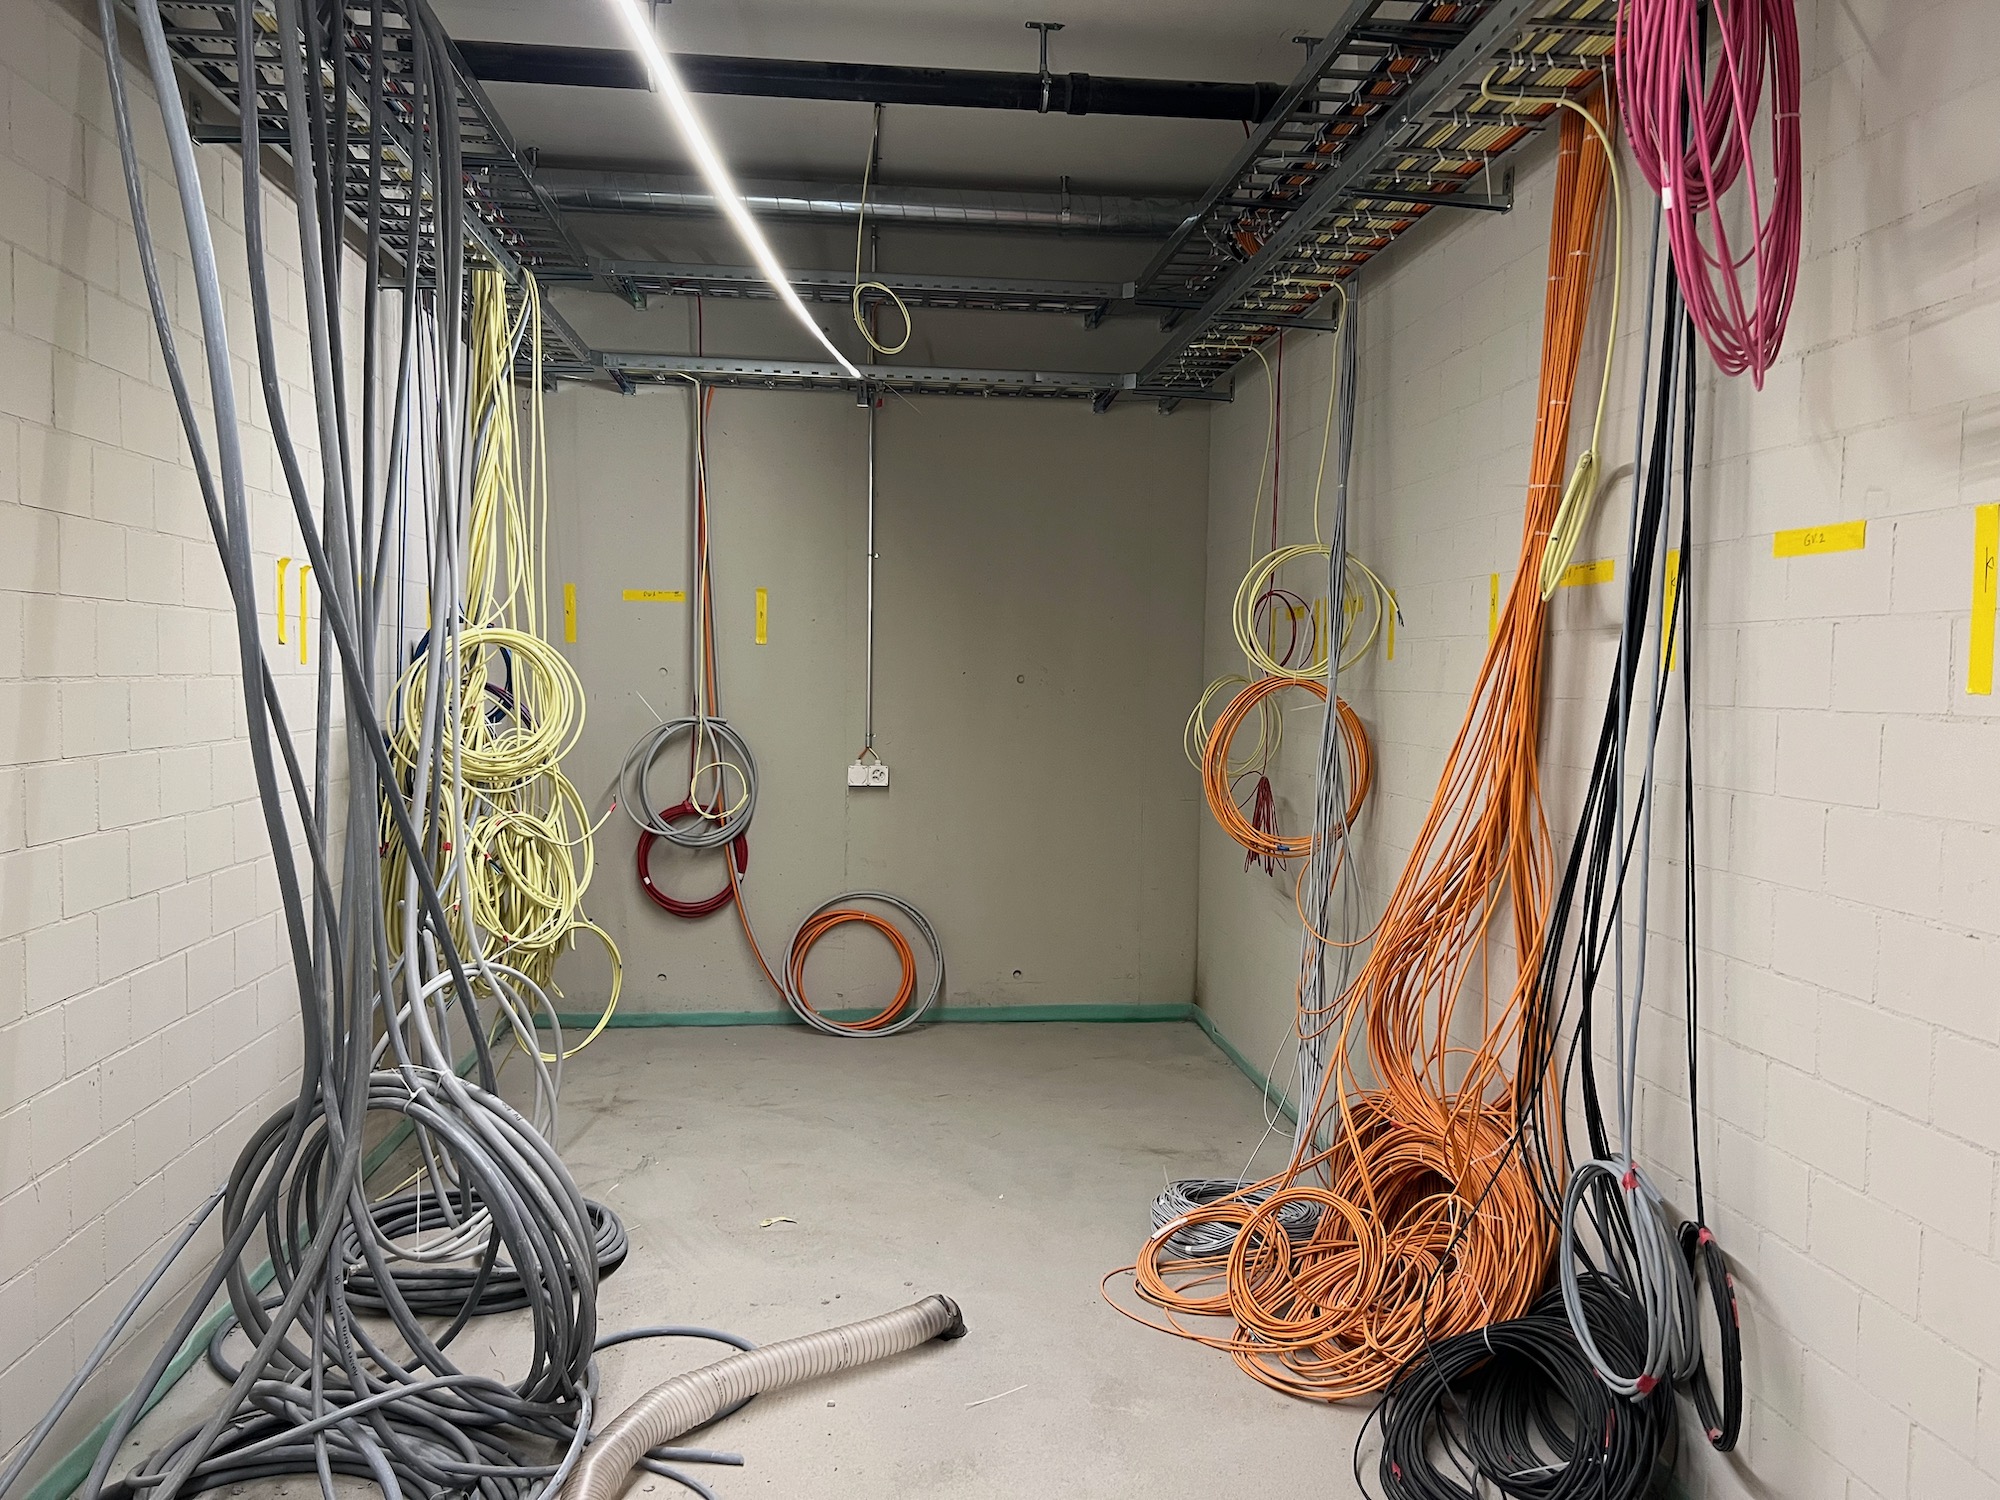 Viele Kabel